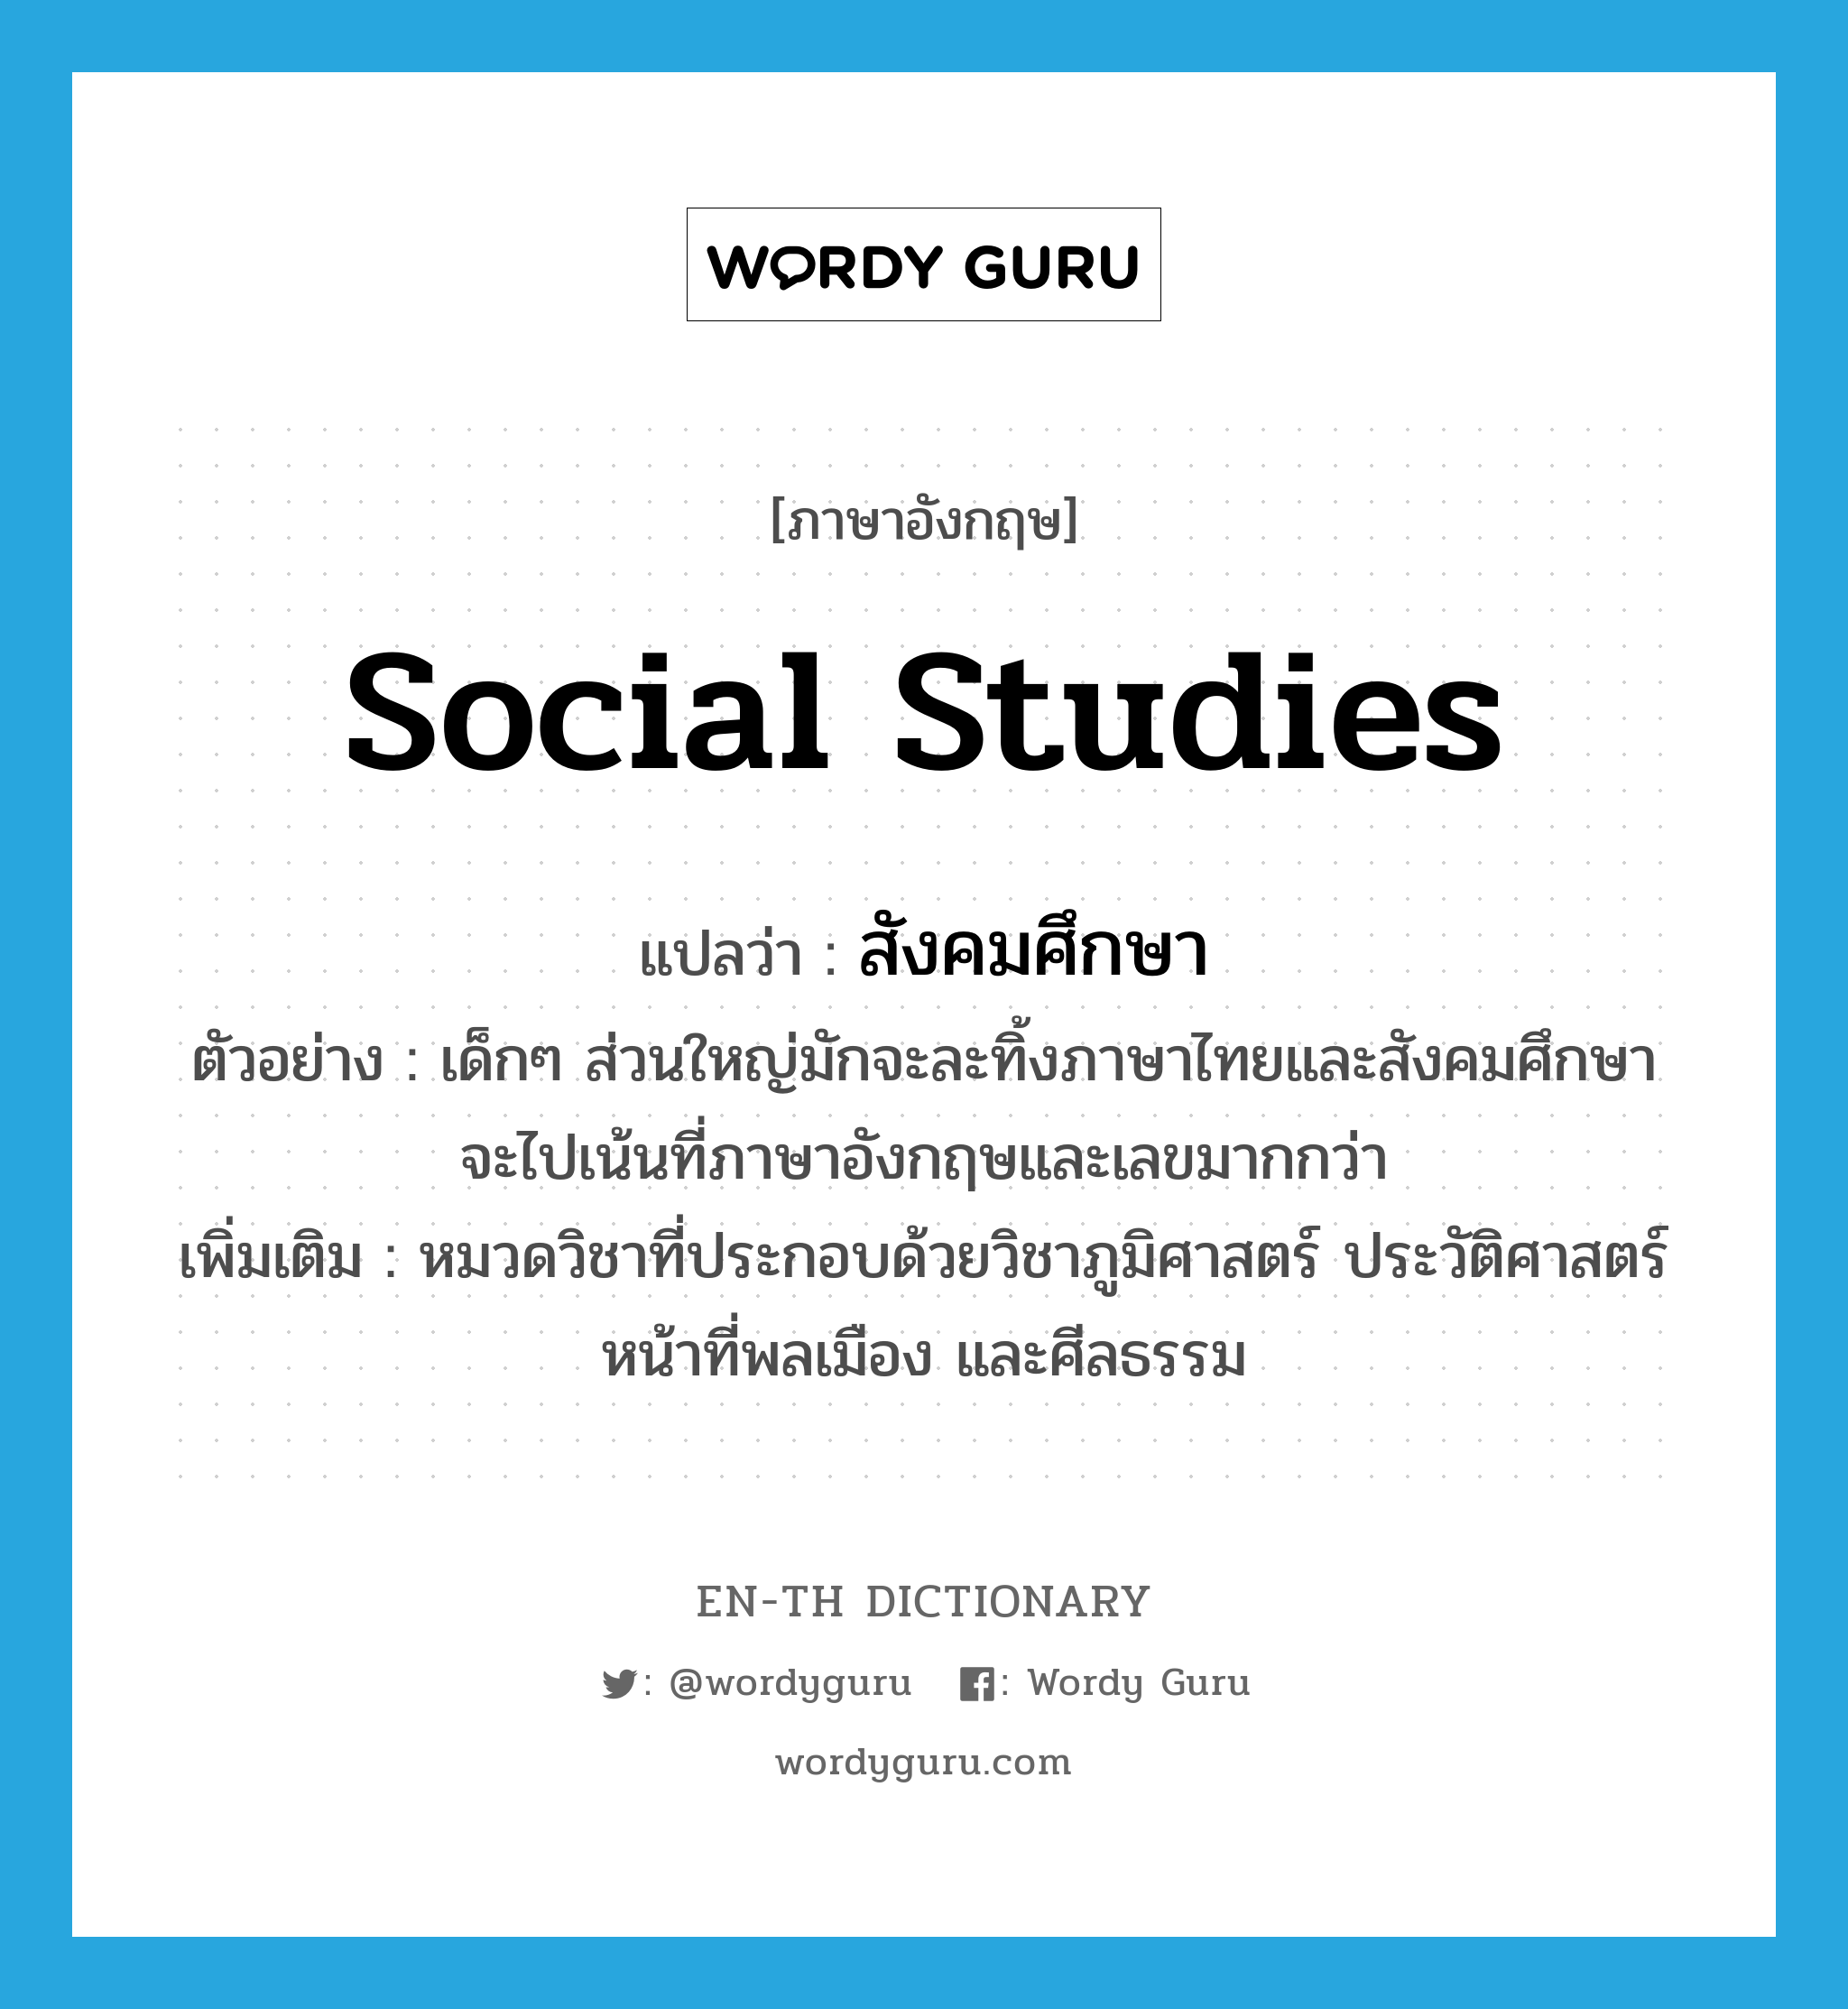 สังคมศึกษา ภาษาอังกฤษ?, คำศัพท์ภาษาอังกฤษ สังคมศึกษา แปลว่า social studies ประเภท N ตัวอย่าง เด็กๆ ส่วนใหญ่มักจะละทิ้งภาษาไทยและสังคมศึกษา จะไปเน้นที่ภาษาอังกฤษและเลขมากกว่า เพิ่มเติม หมวดวิชาที่ประกอบด้วยวิชาภูมิศาสตร์ ประวัติศาสตร์ หน้าที่พลเมือง และศีลธรรม หมวด N